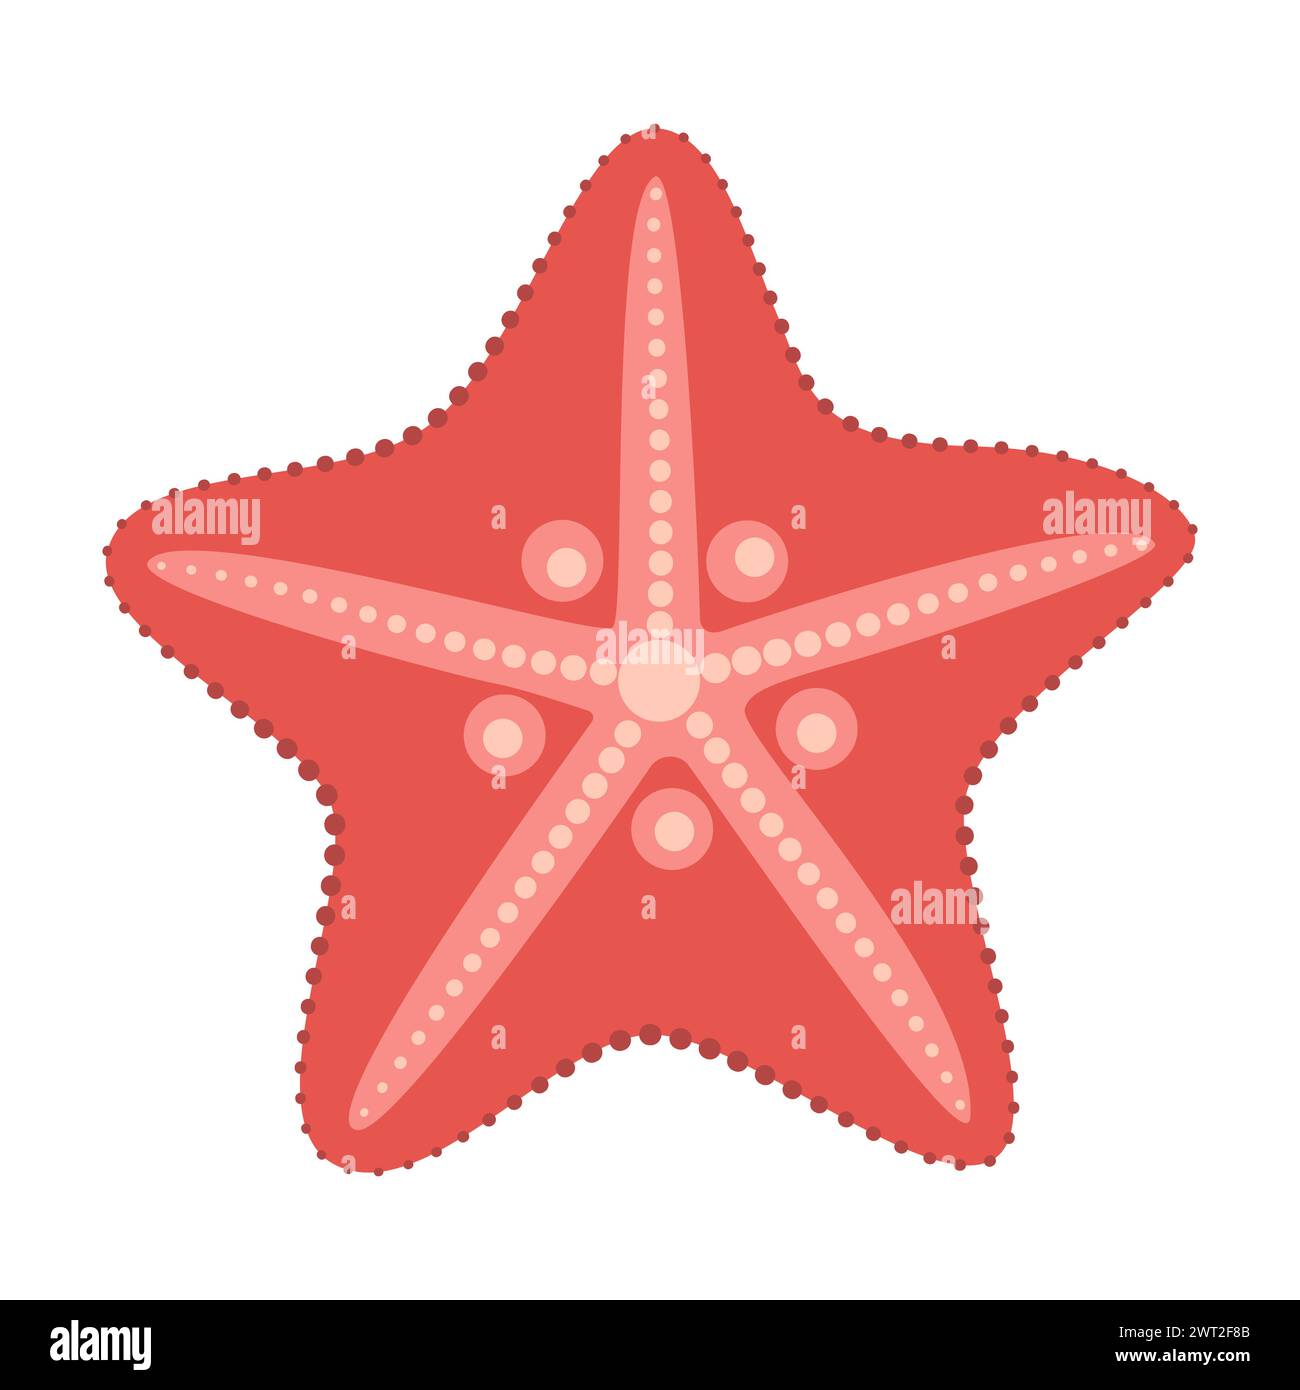 Icône étoile de chauve-souris rouge. Style plat étoile de mer. Style cartoon animal marin. Échinoderme. Icône marine sous-marine isolée sur fond blanc. Illustration vectorielle d'été Illustration de Vecteur